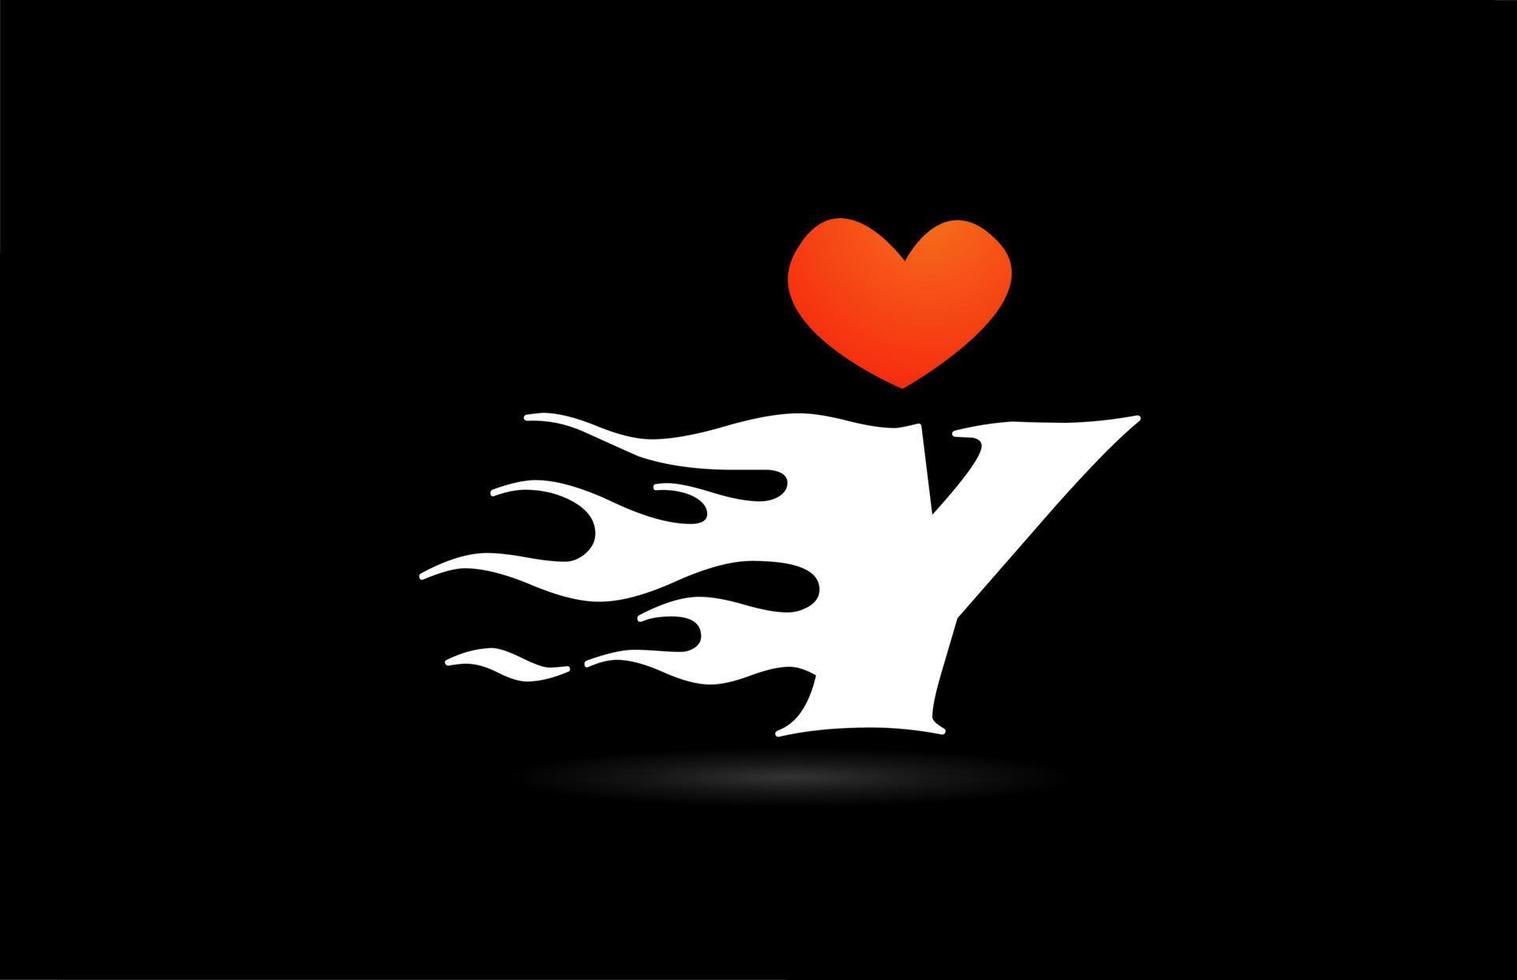 création de logo d'icône de lettre alphabet y. modèle créatif pour les entreprises avec des flammes de coeur d'amour vecteur